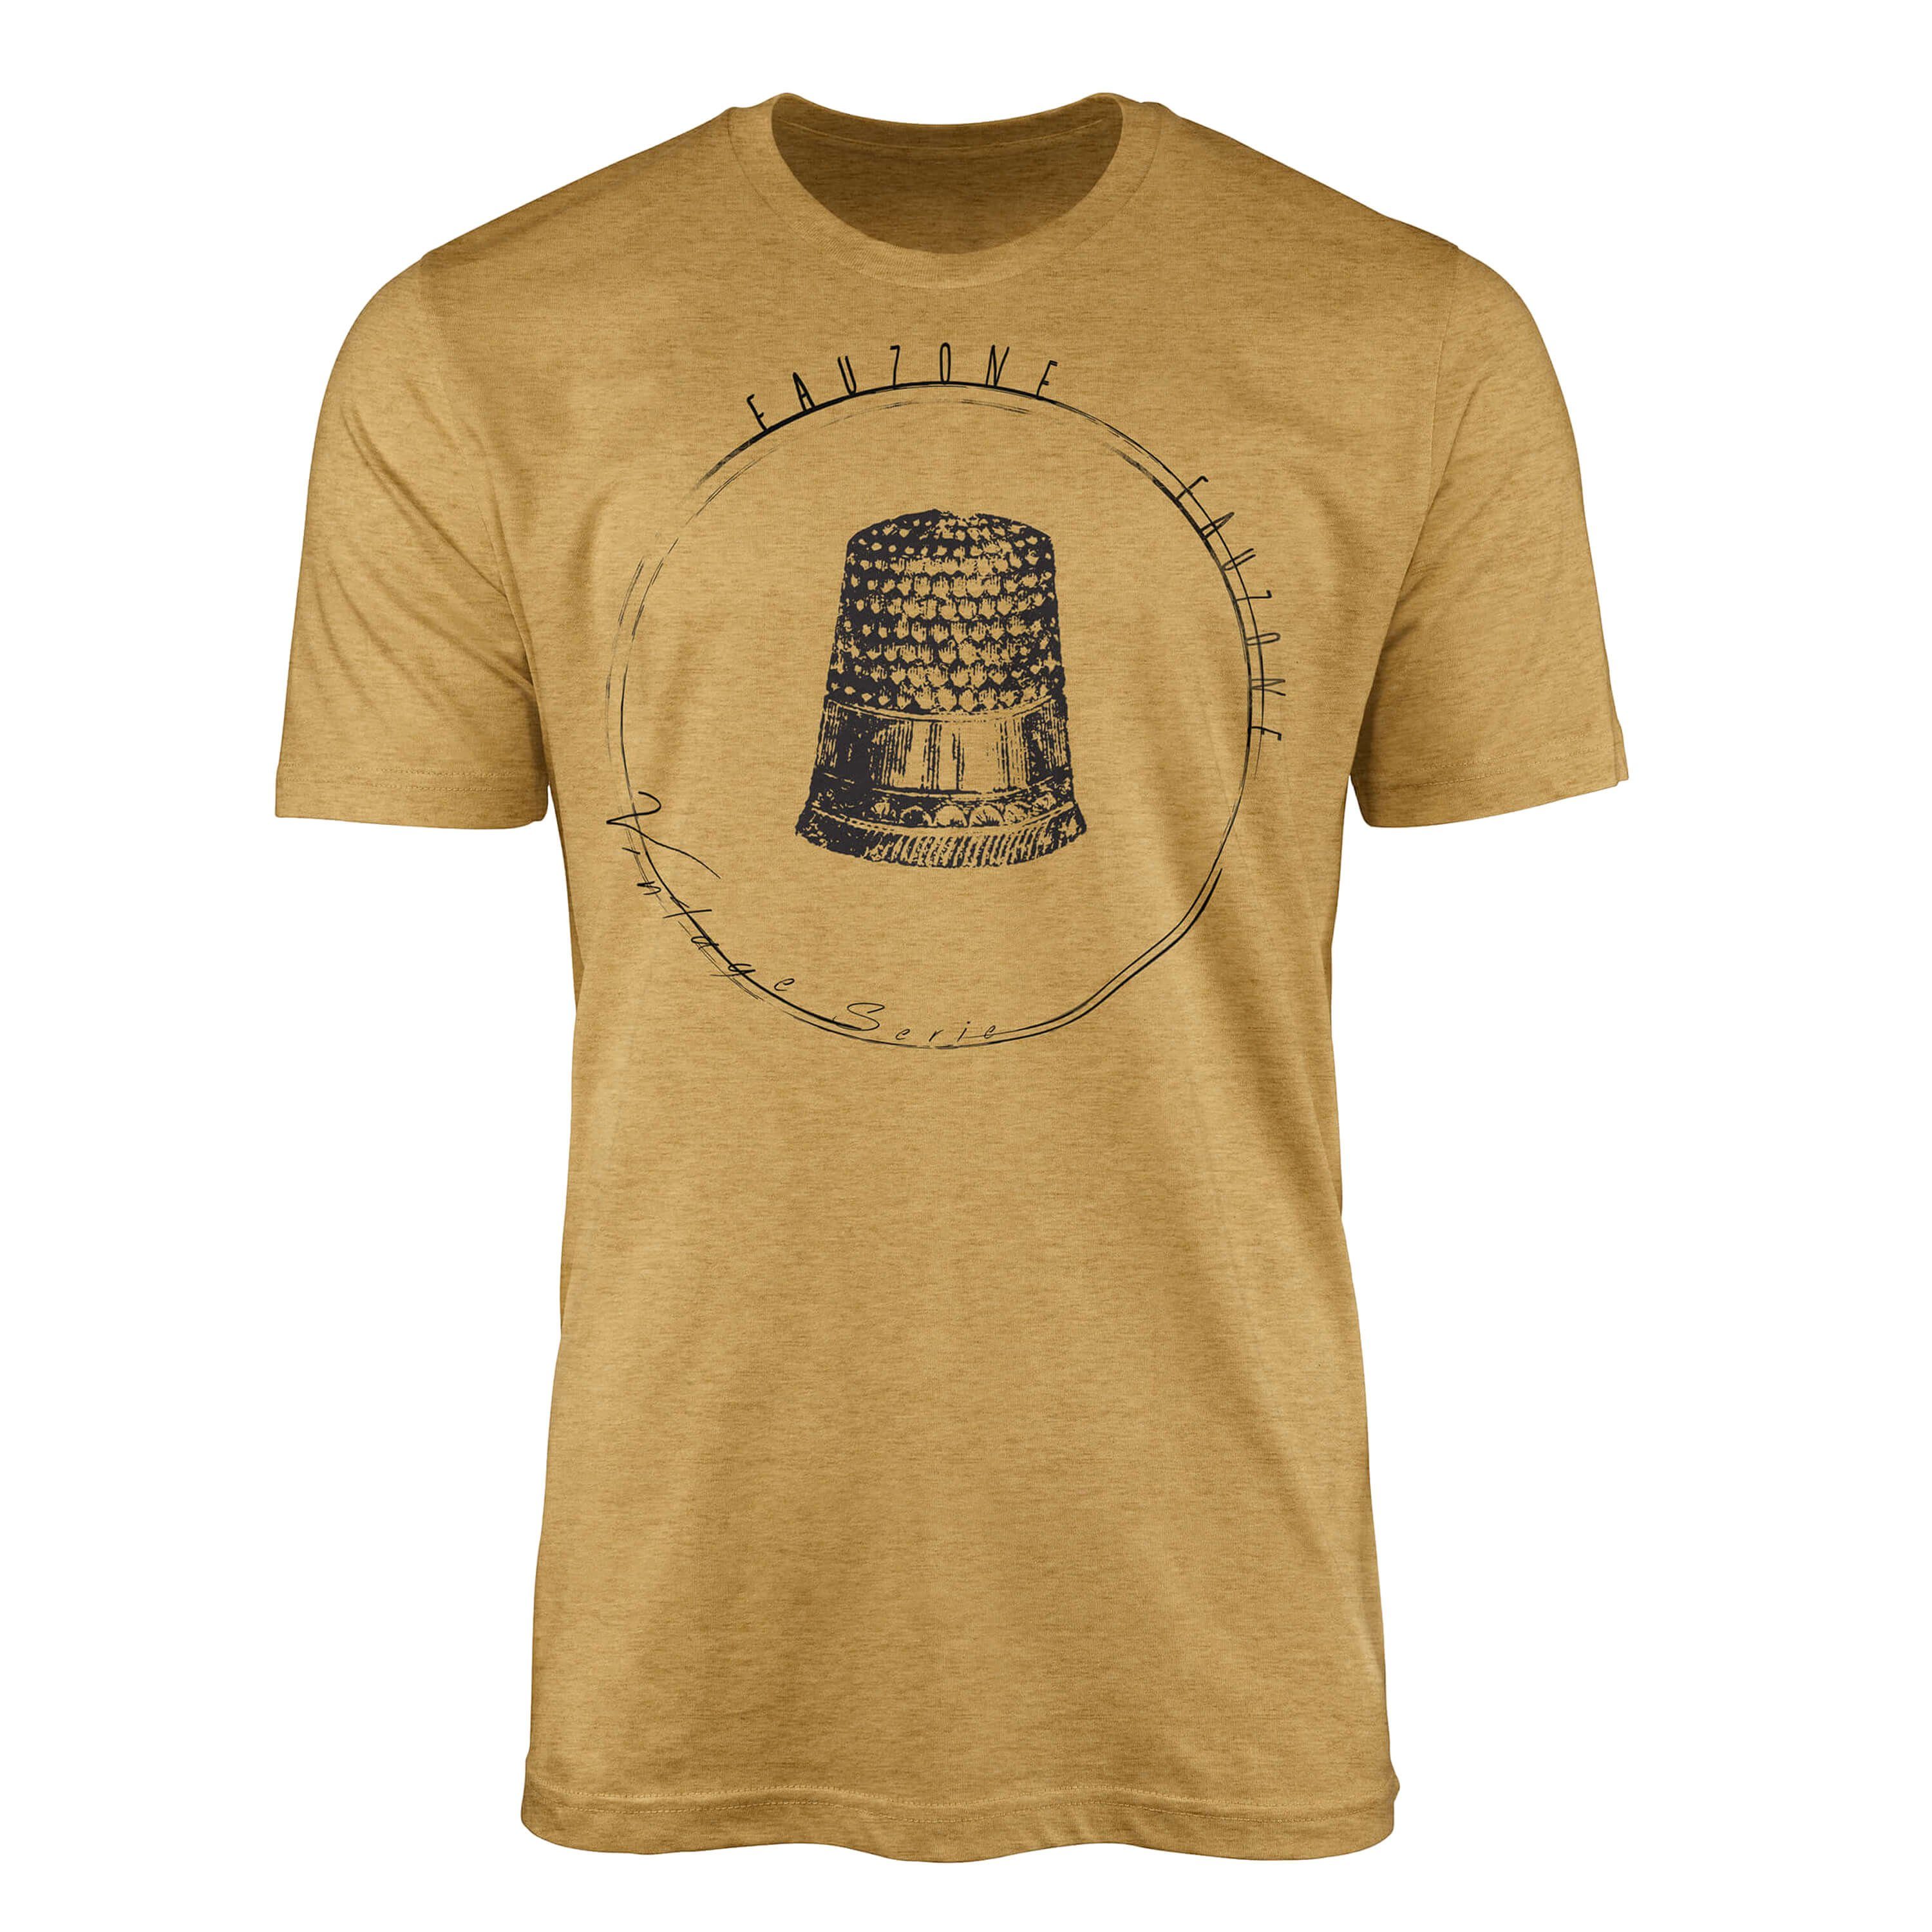 Art Herren Antique Sinus T-Shirt Fingerhut Gold Vintage T-Shirt